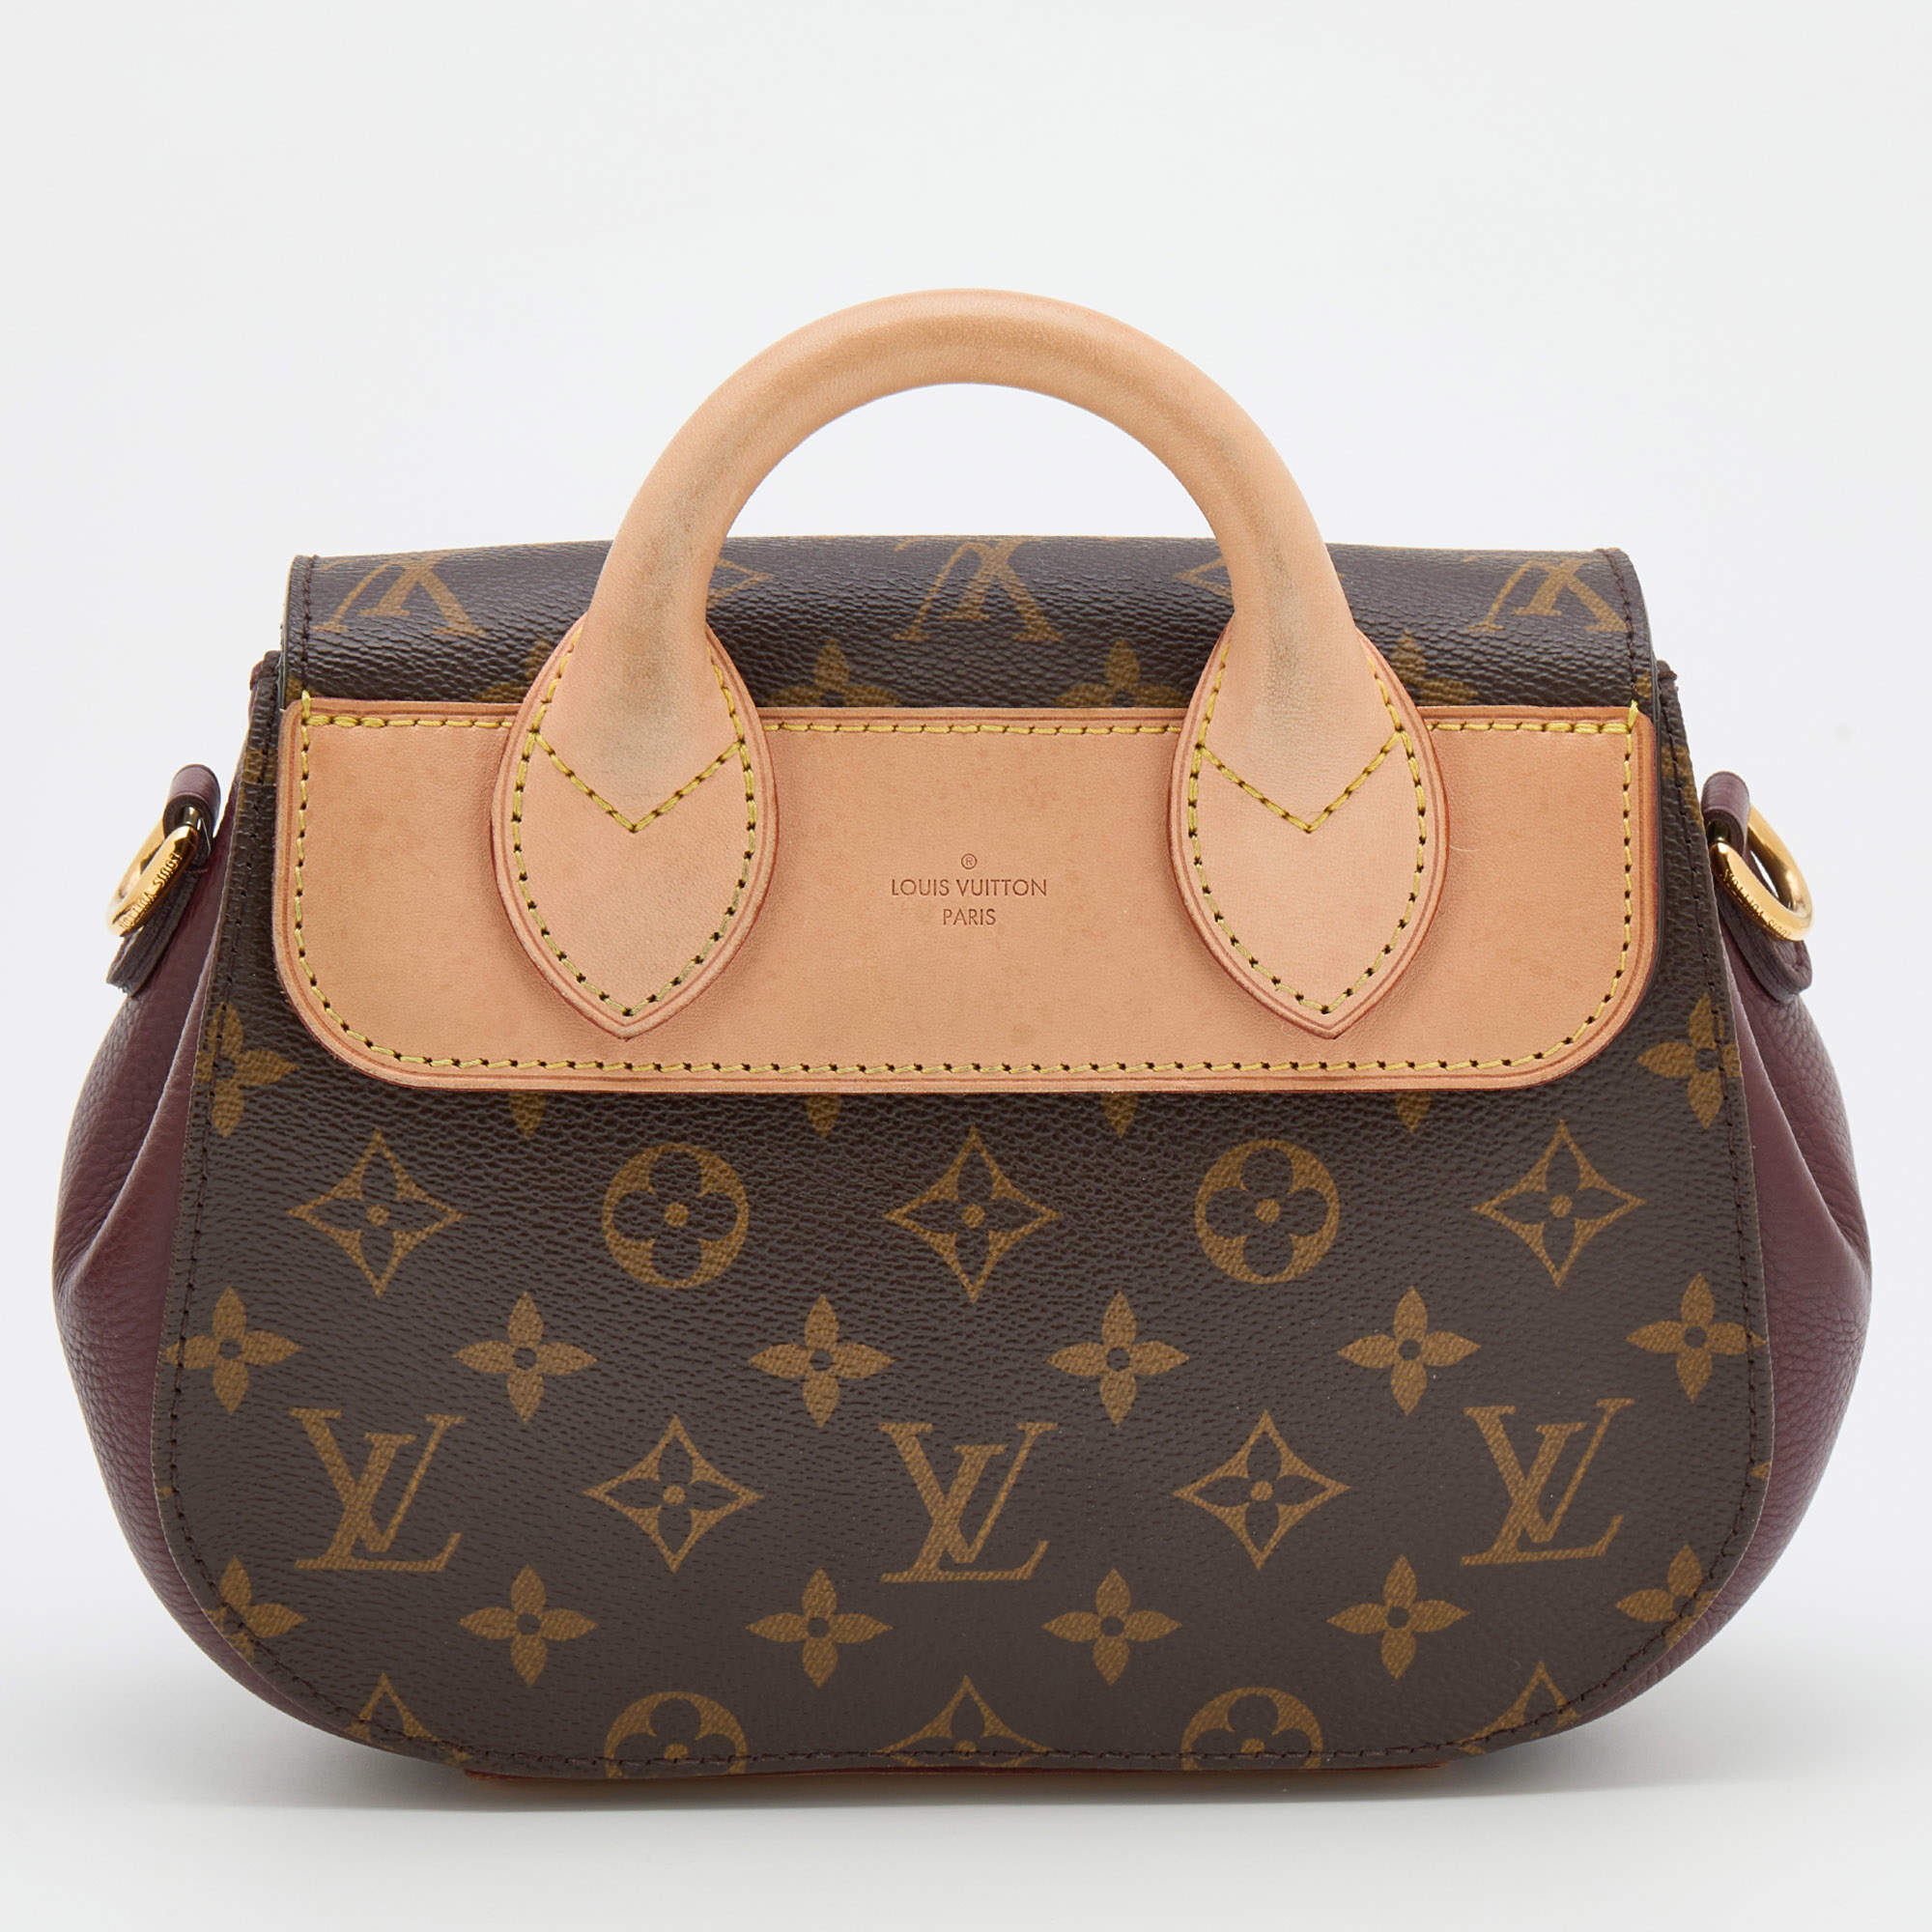 Adelántate al otoño con lo más nuevo de Louis Vuitton - Woman